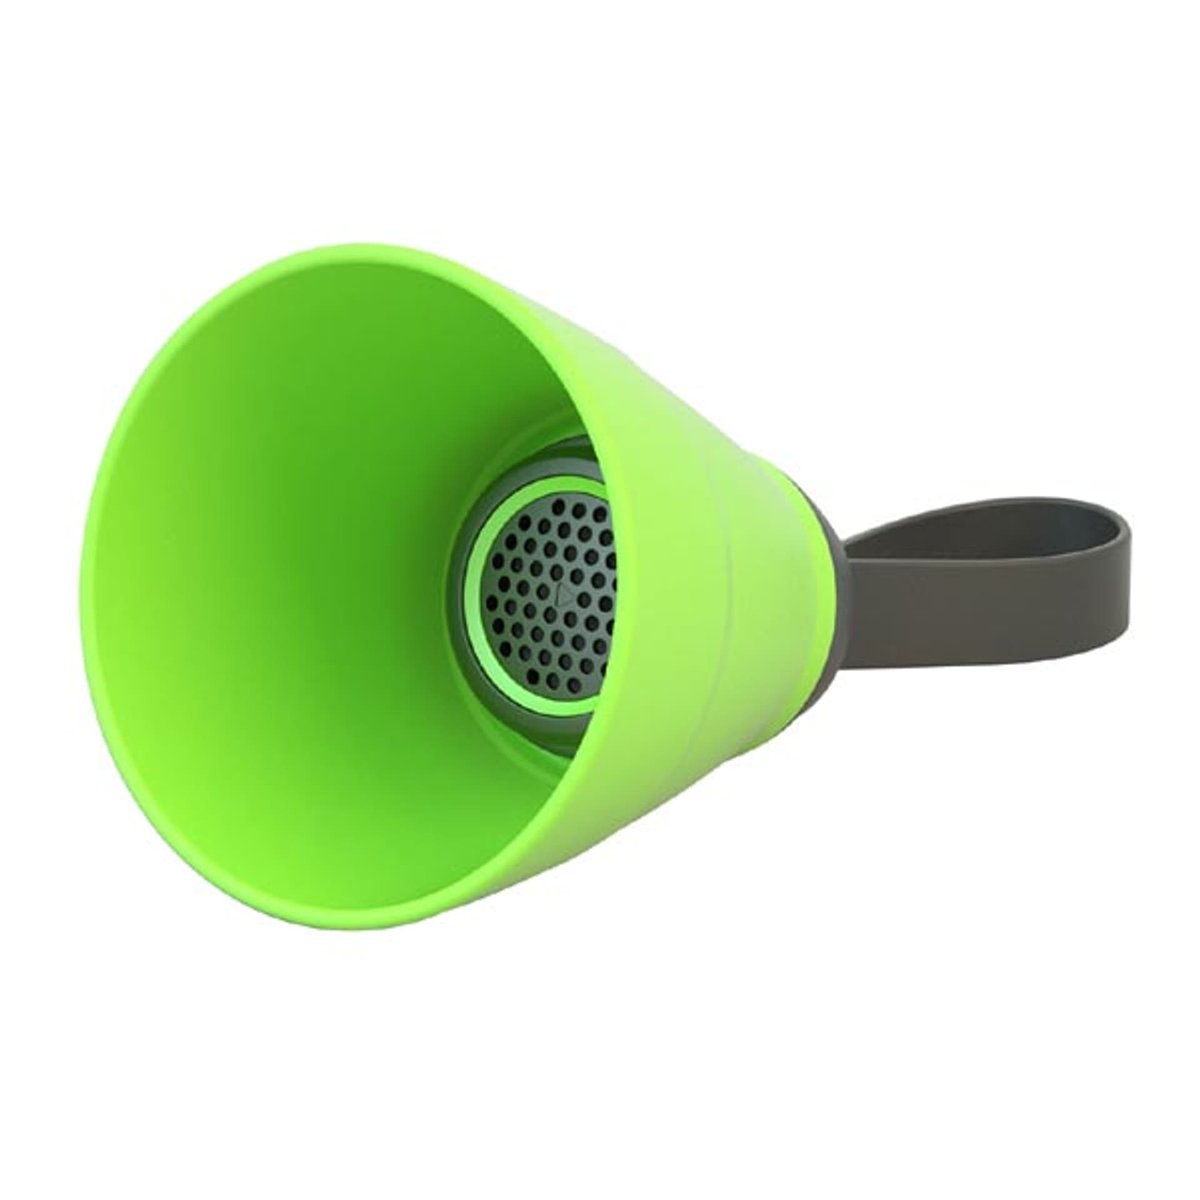 Zdjęcia - Głośniki samochodowe YZSY Głośnik bluetooth SALI, 1.0, 3W, zielony, regulacja głośności, składa